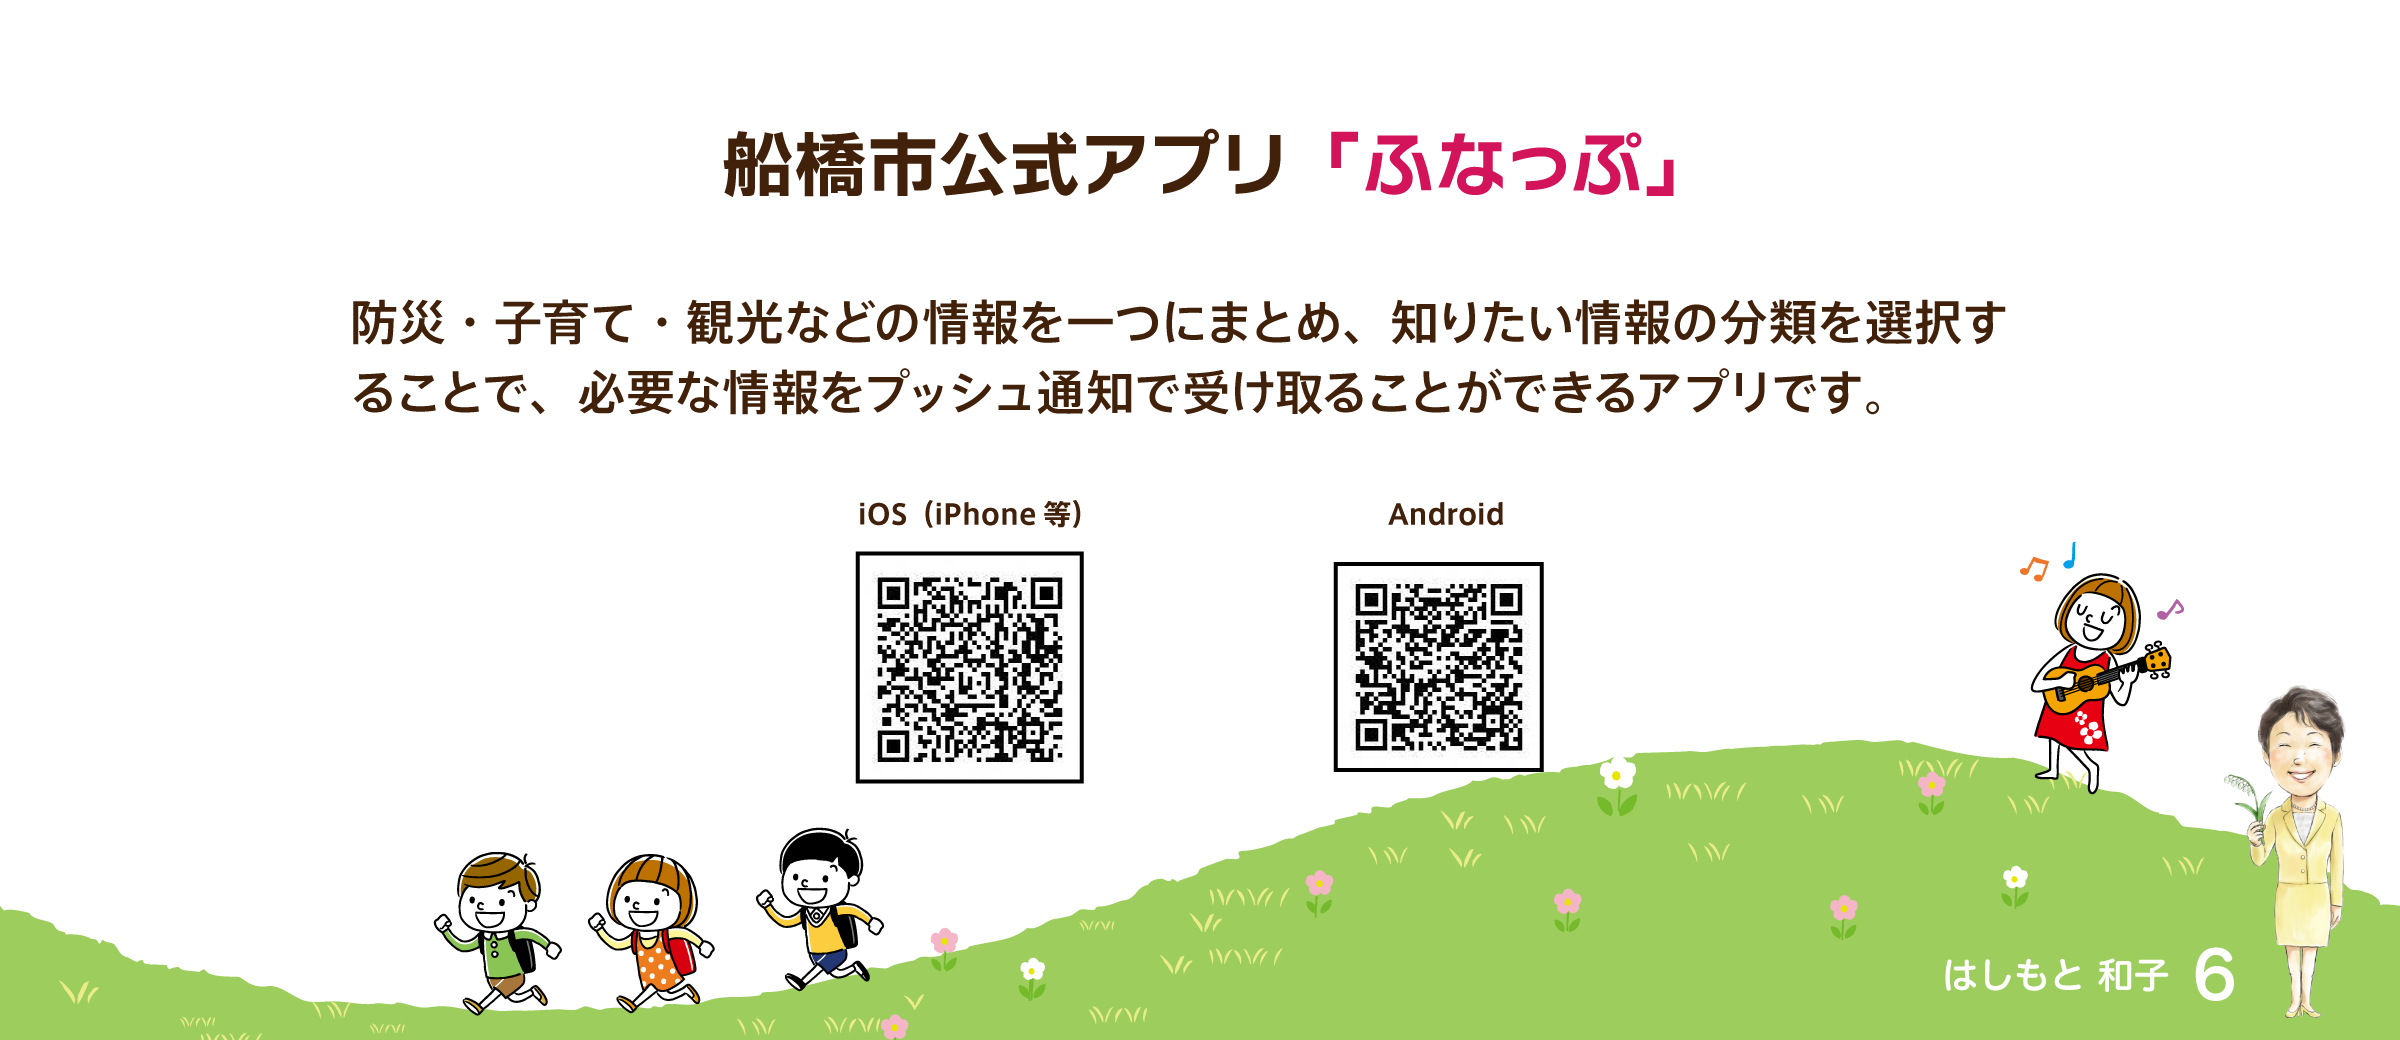 船橋市公式アプリ「ふなっぷ」